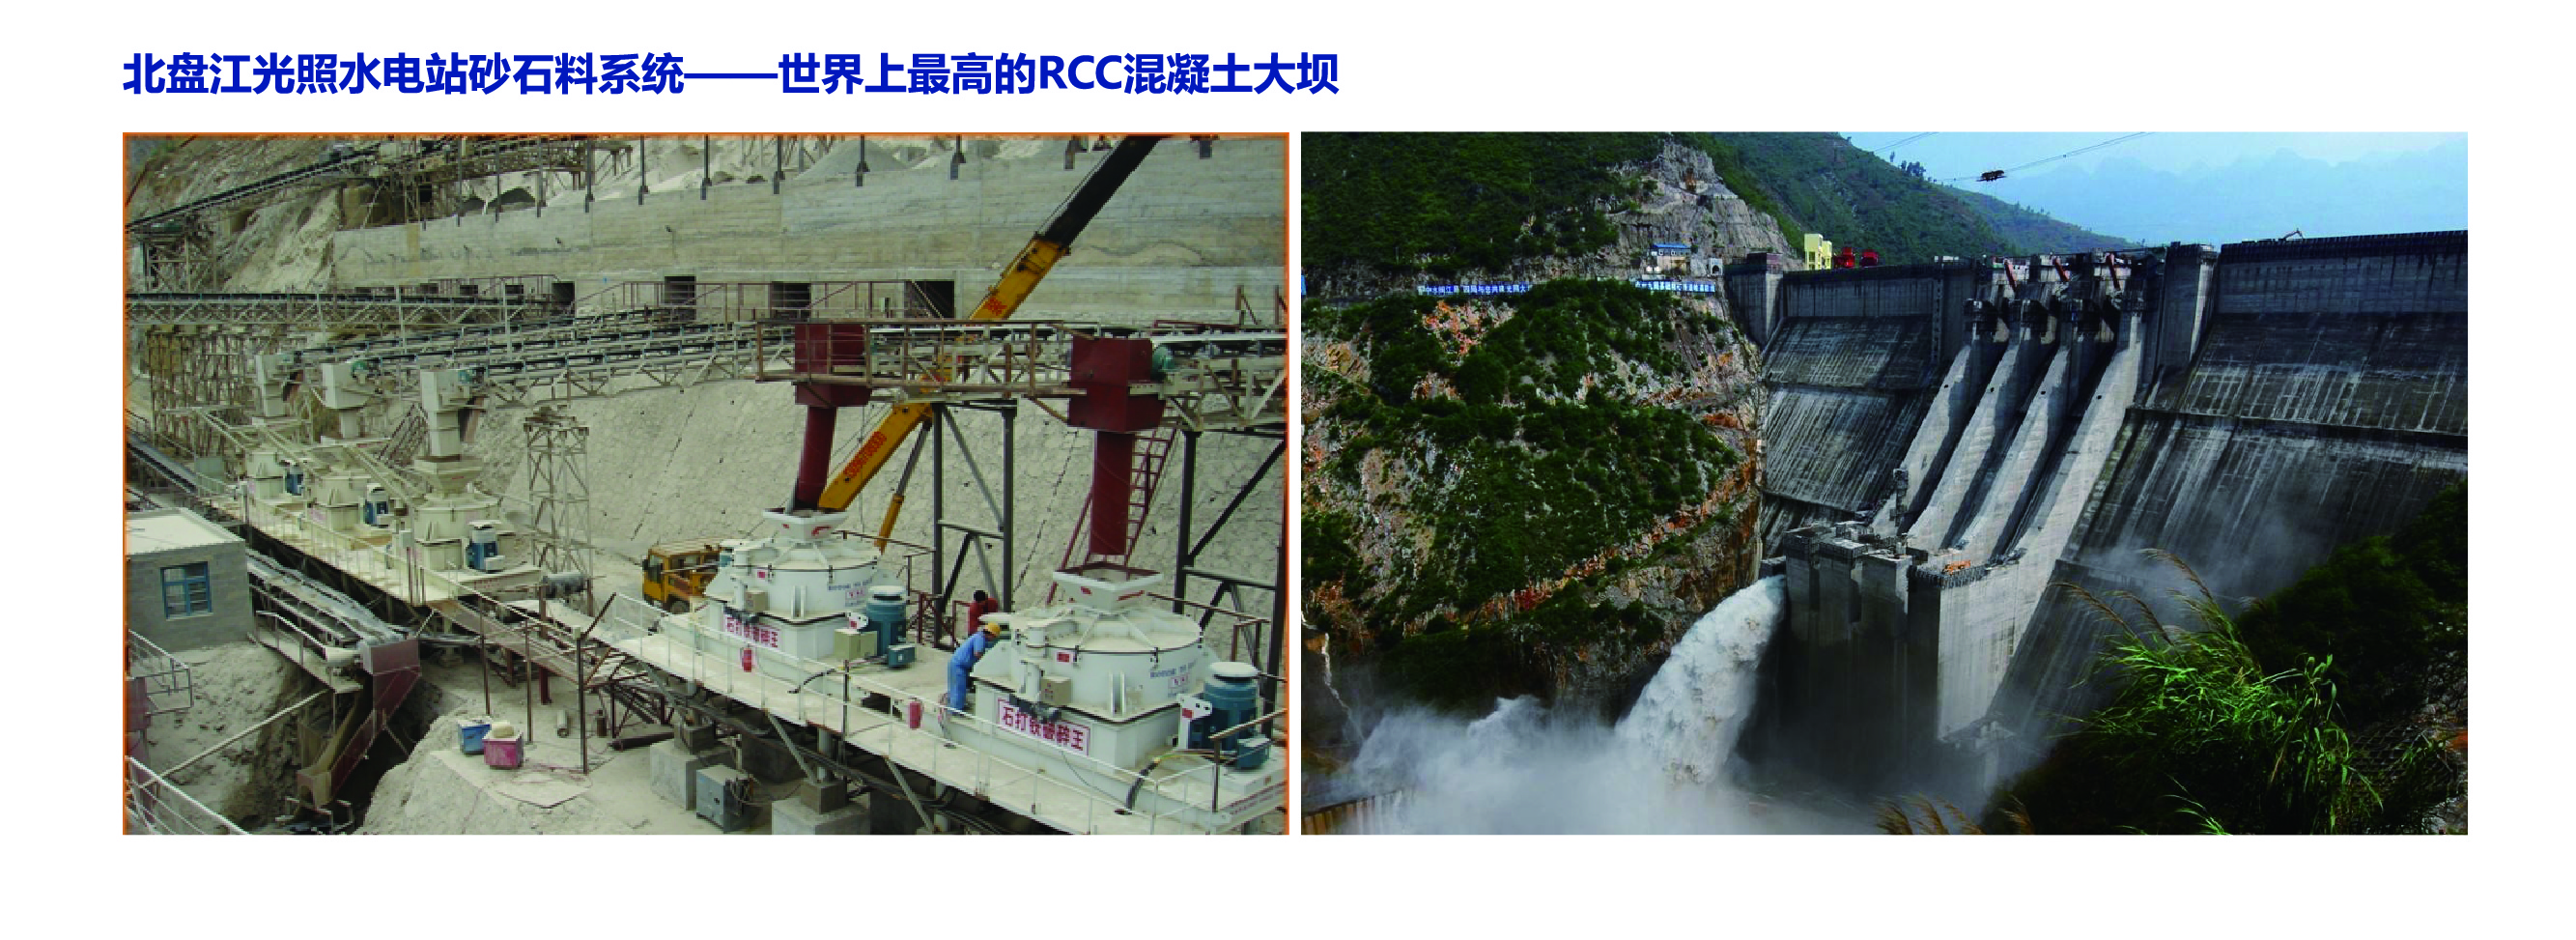 世界上最高的RCC混凝土大坝——北盘江光照电站 